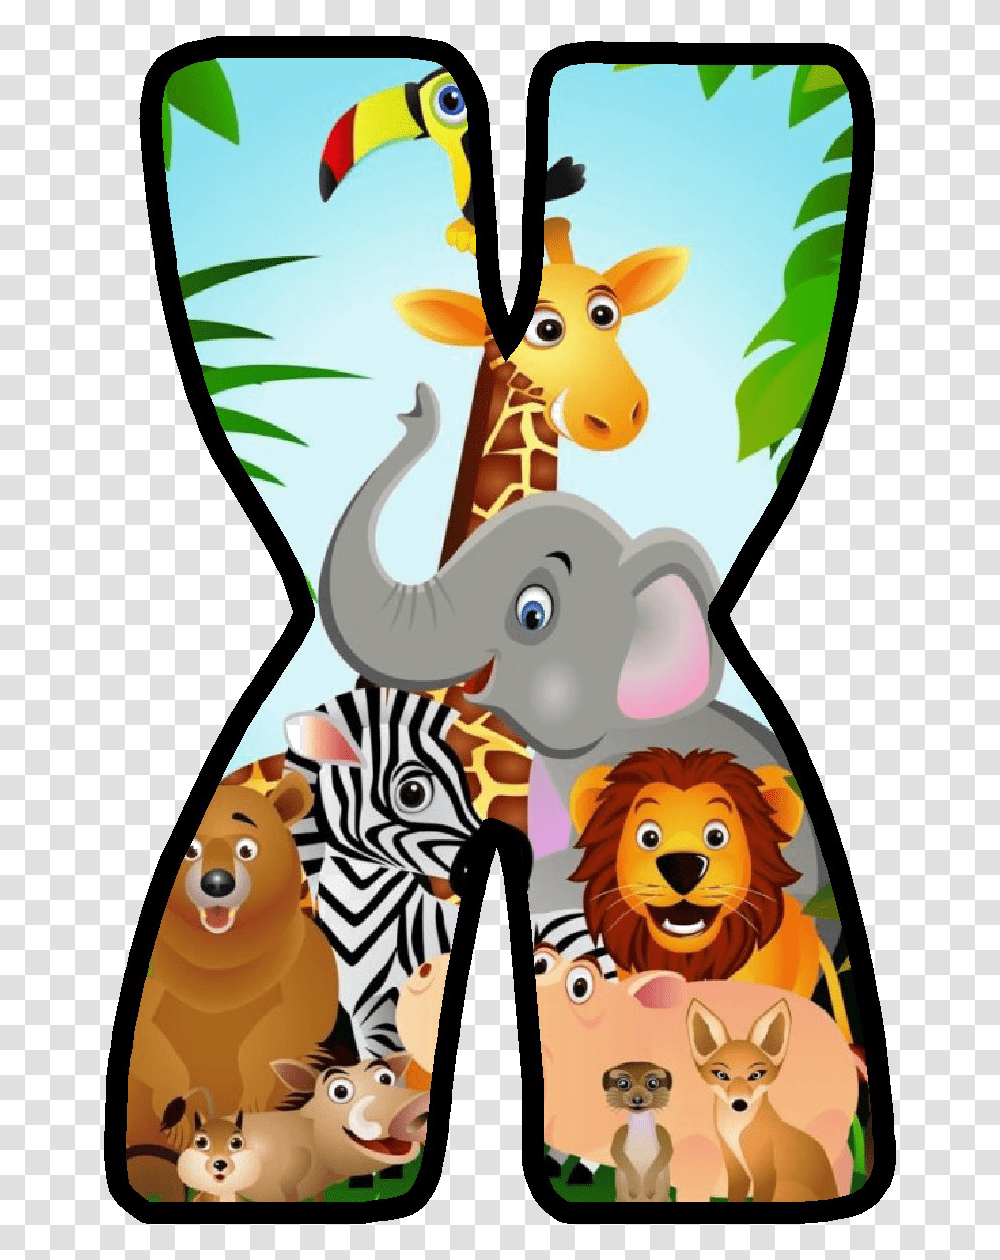 Jungle Safari Download Image Letras De Safari, Mammal, Animal, Wildlife Transparent Png